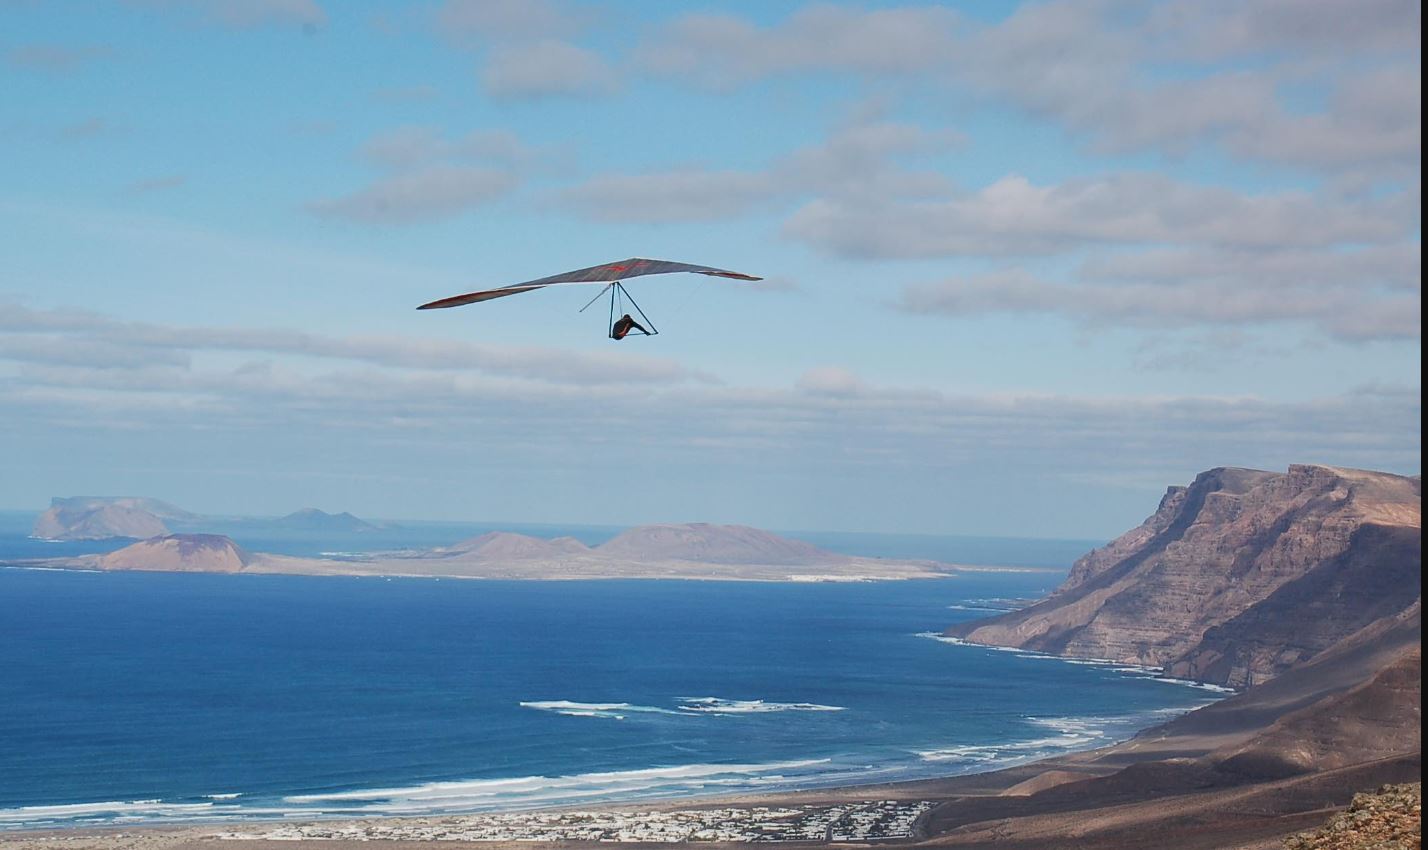 55 pilotos surcarán los cielos de Lanzarote